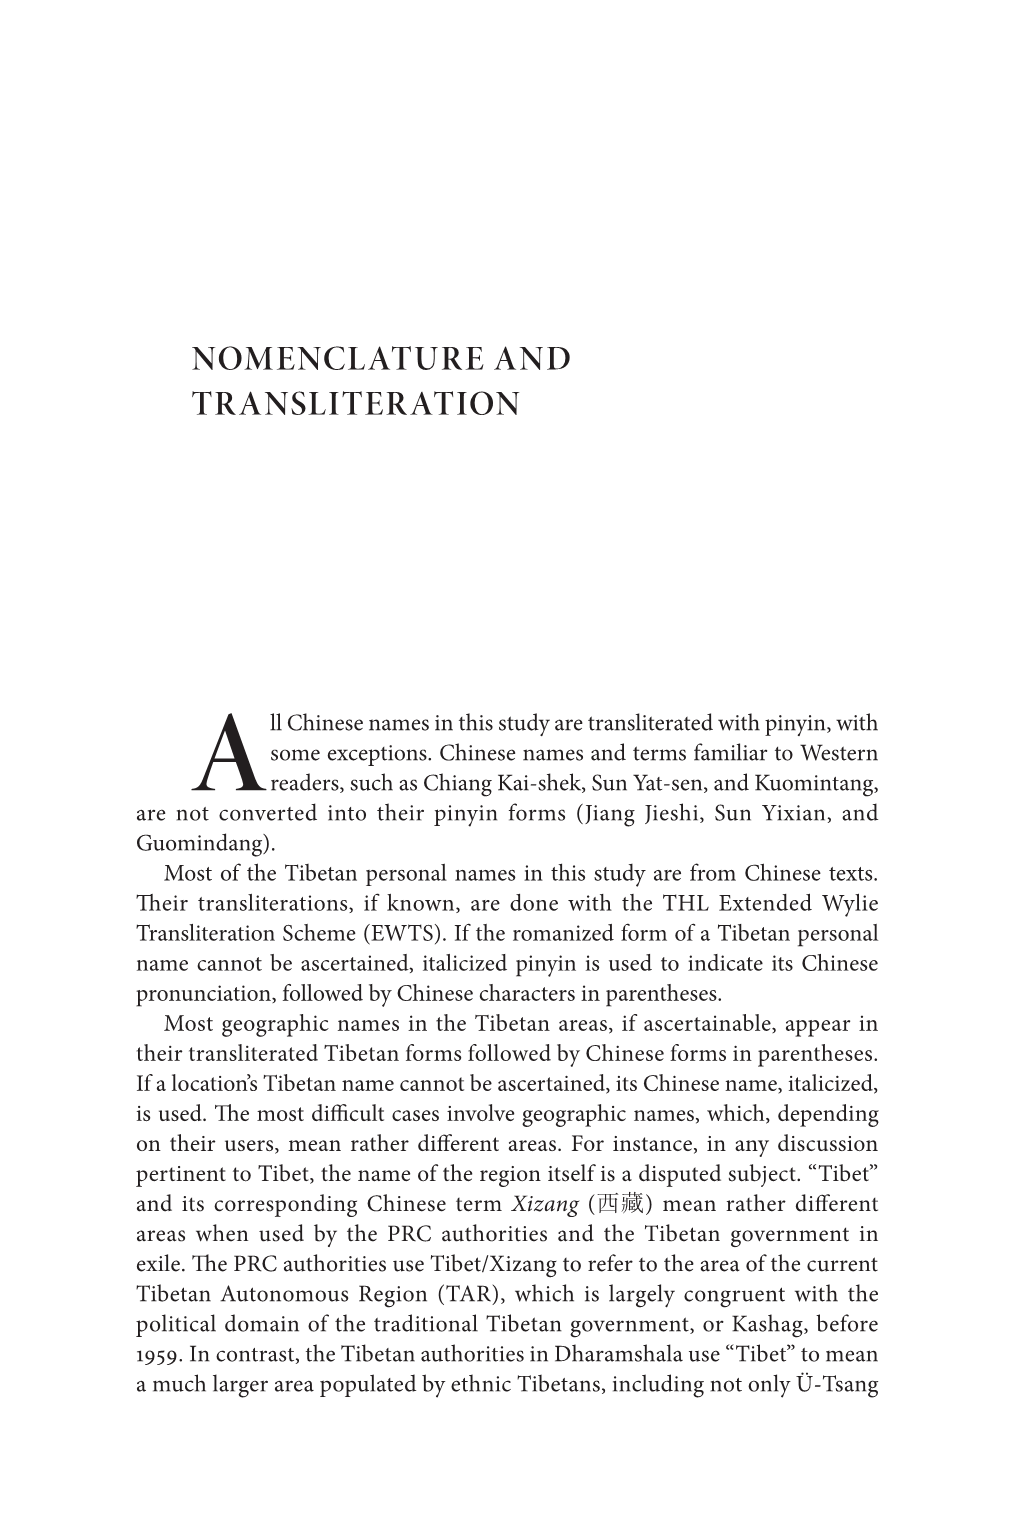 Nomenclature and Transliteration